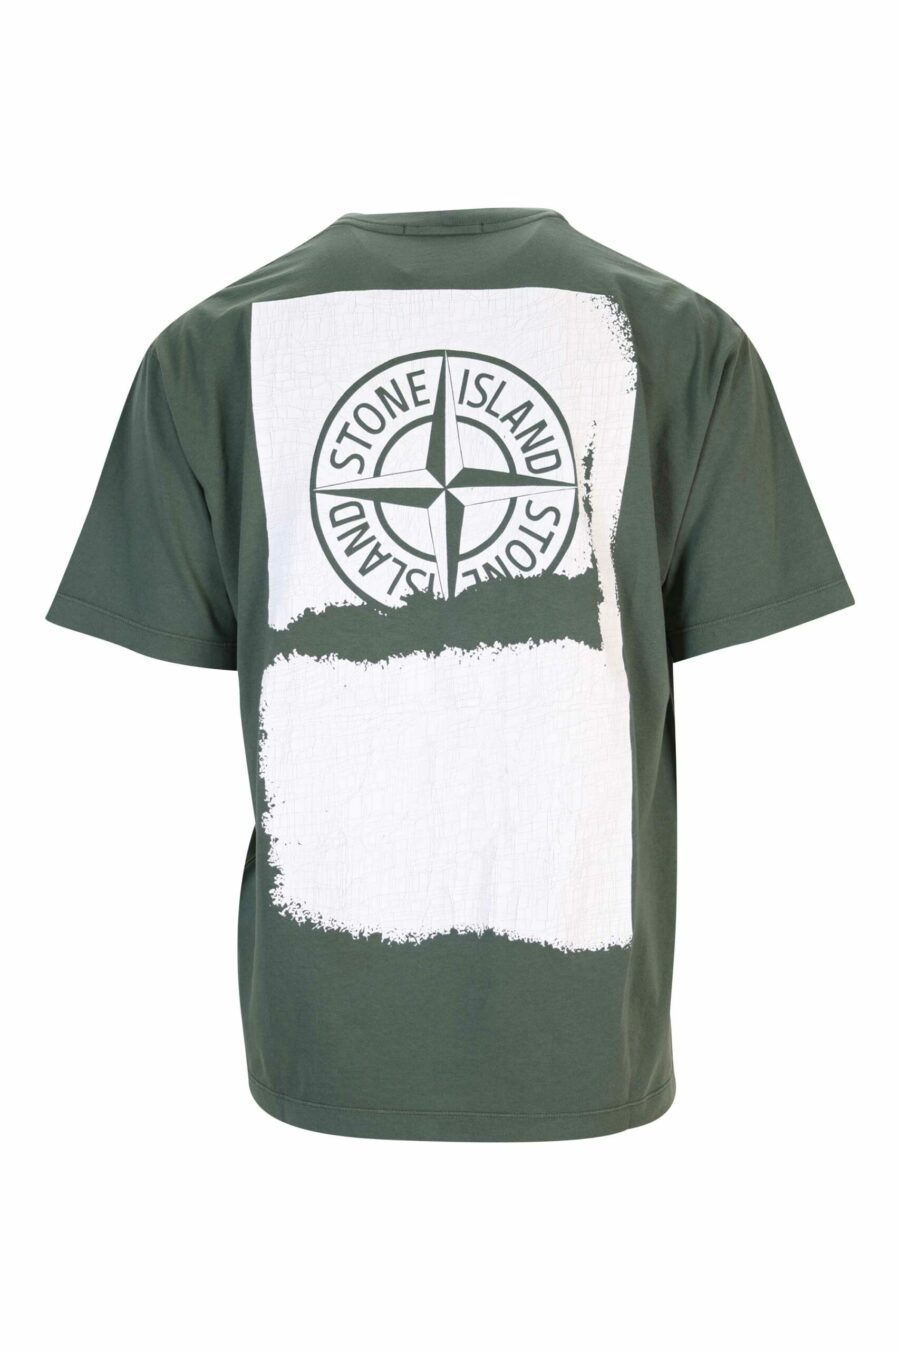 Militärgrünes T-Shirt mit weißem zentriertem Minilogo - 8052572928543 1 skaliert